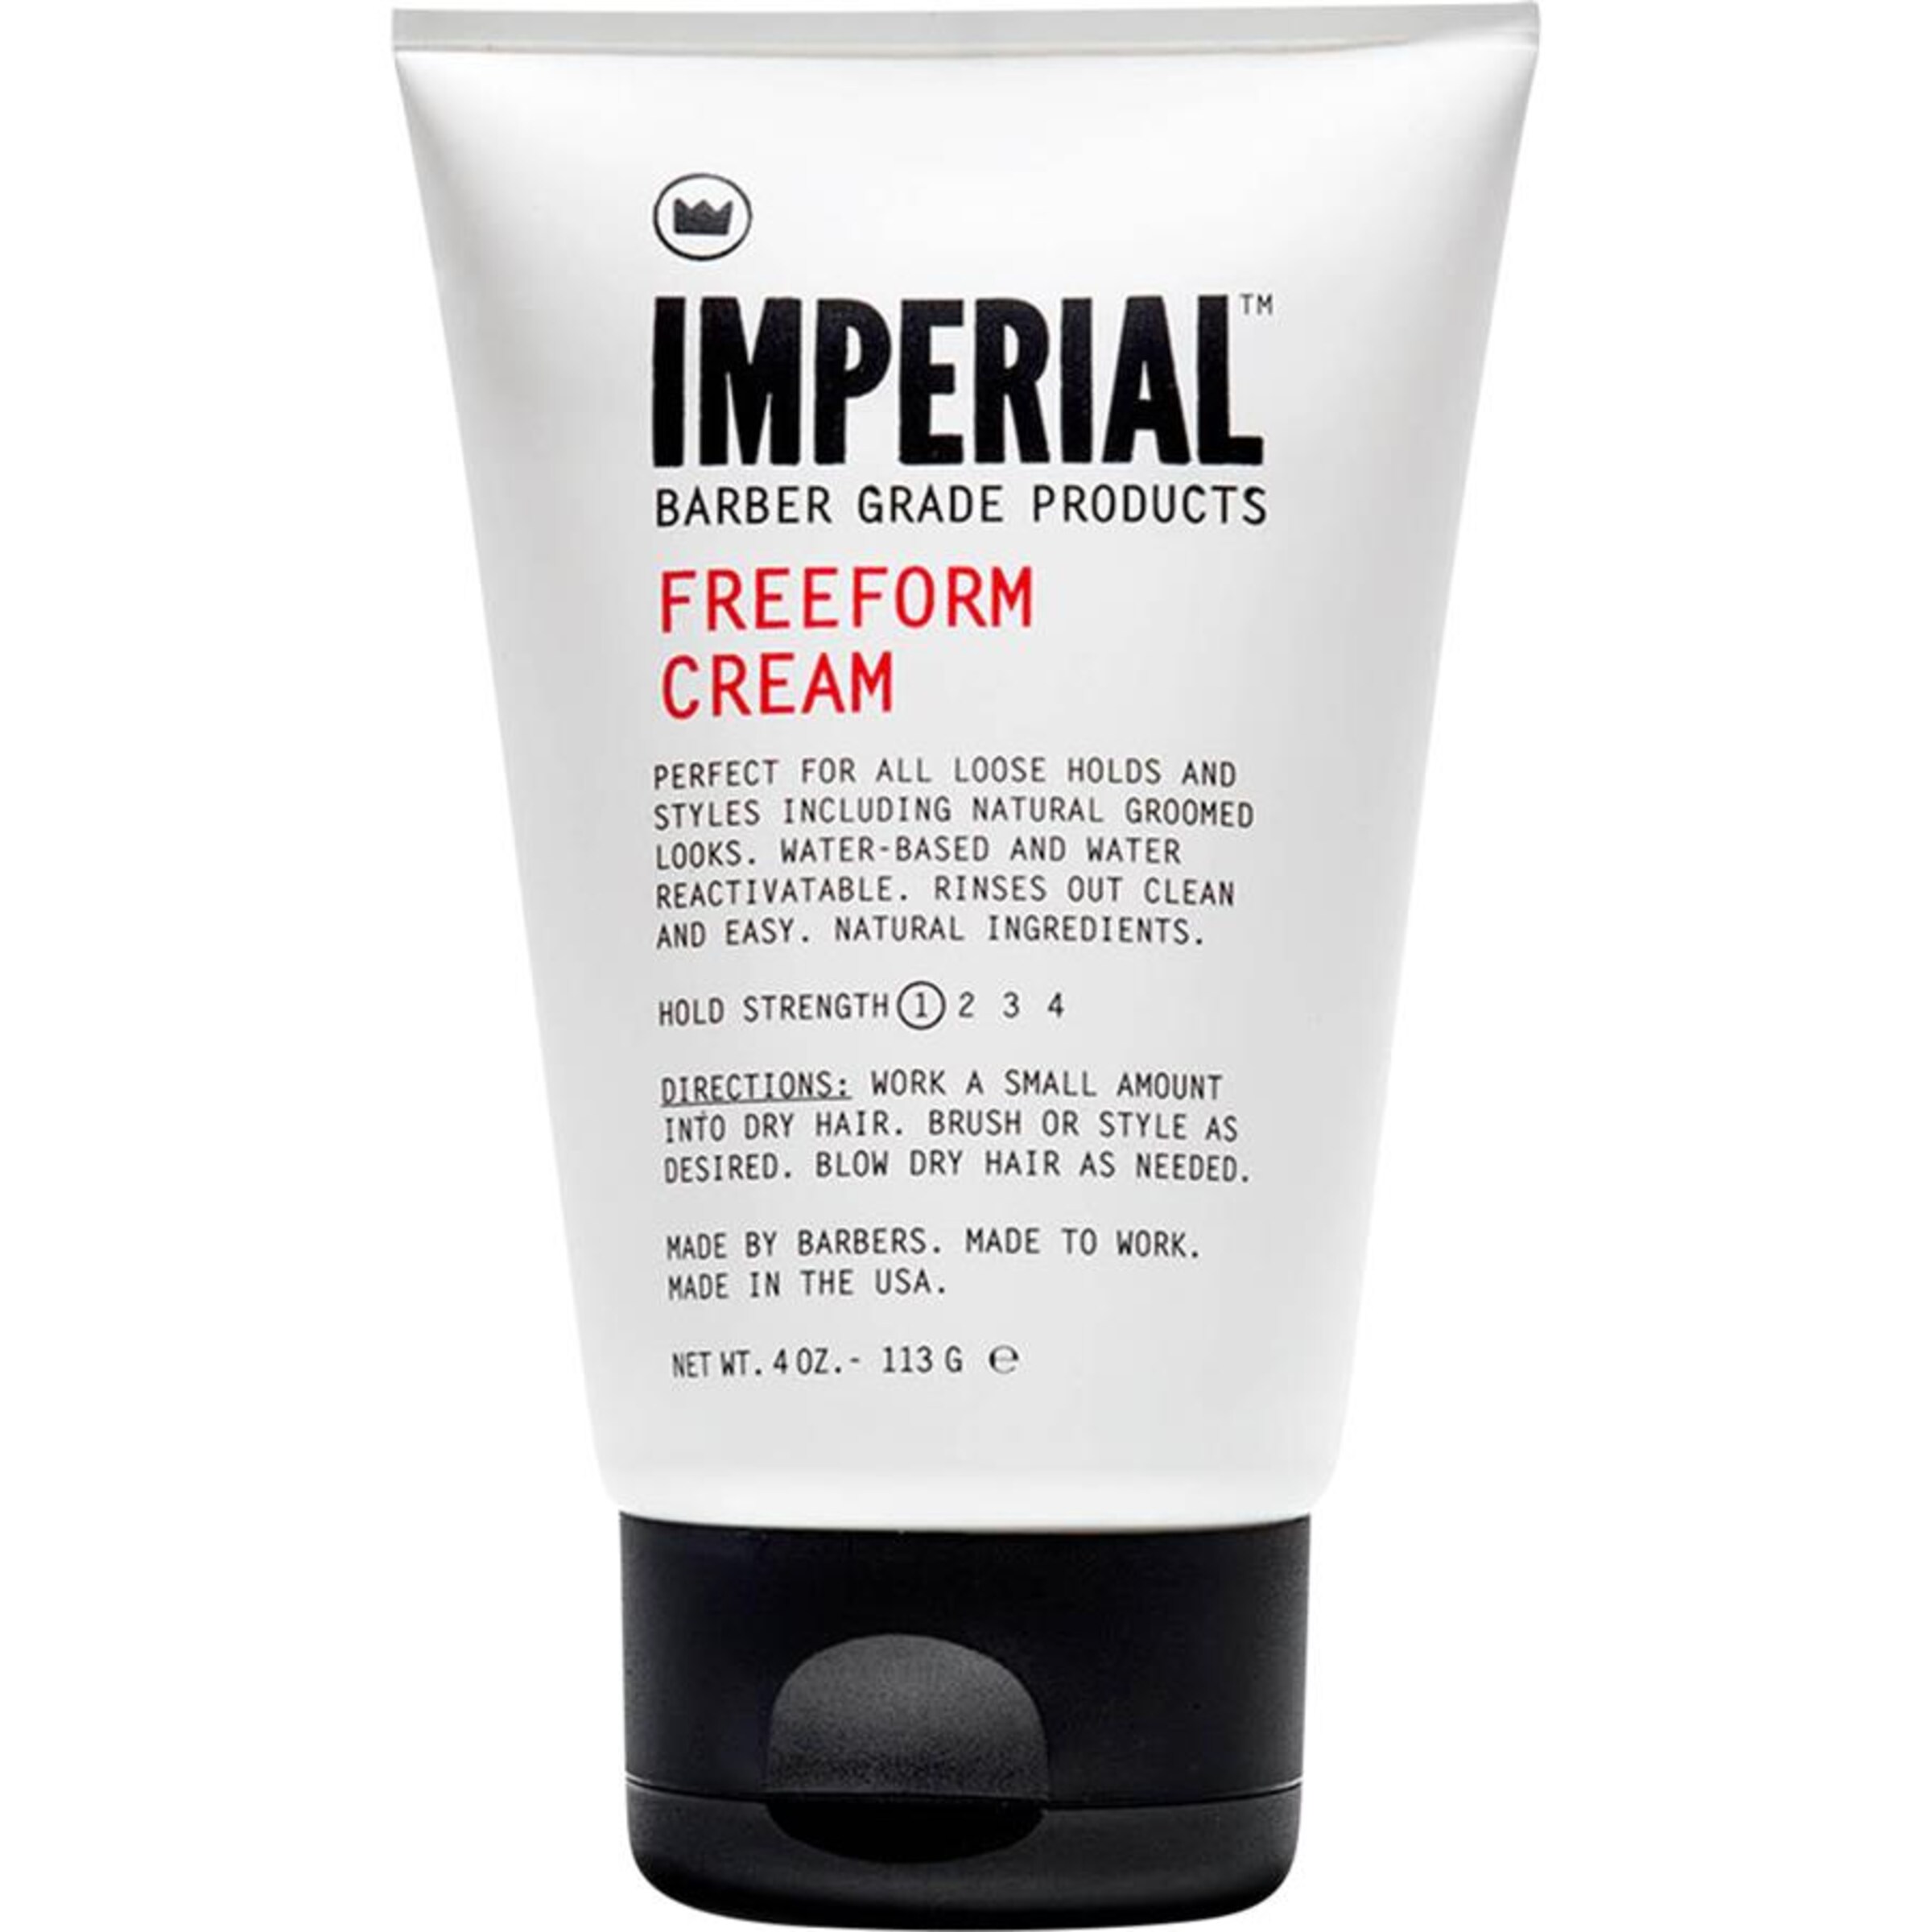 IMPERIAL Freeform Cream in 